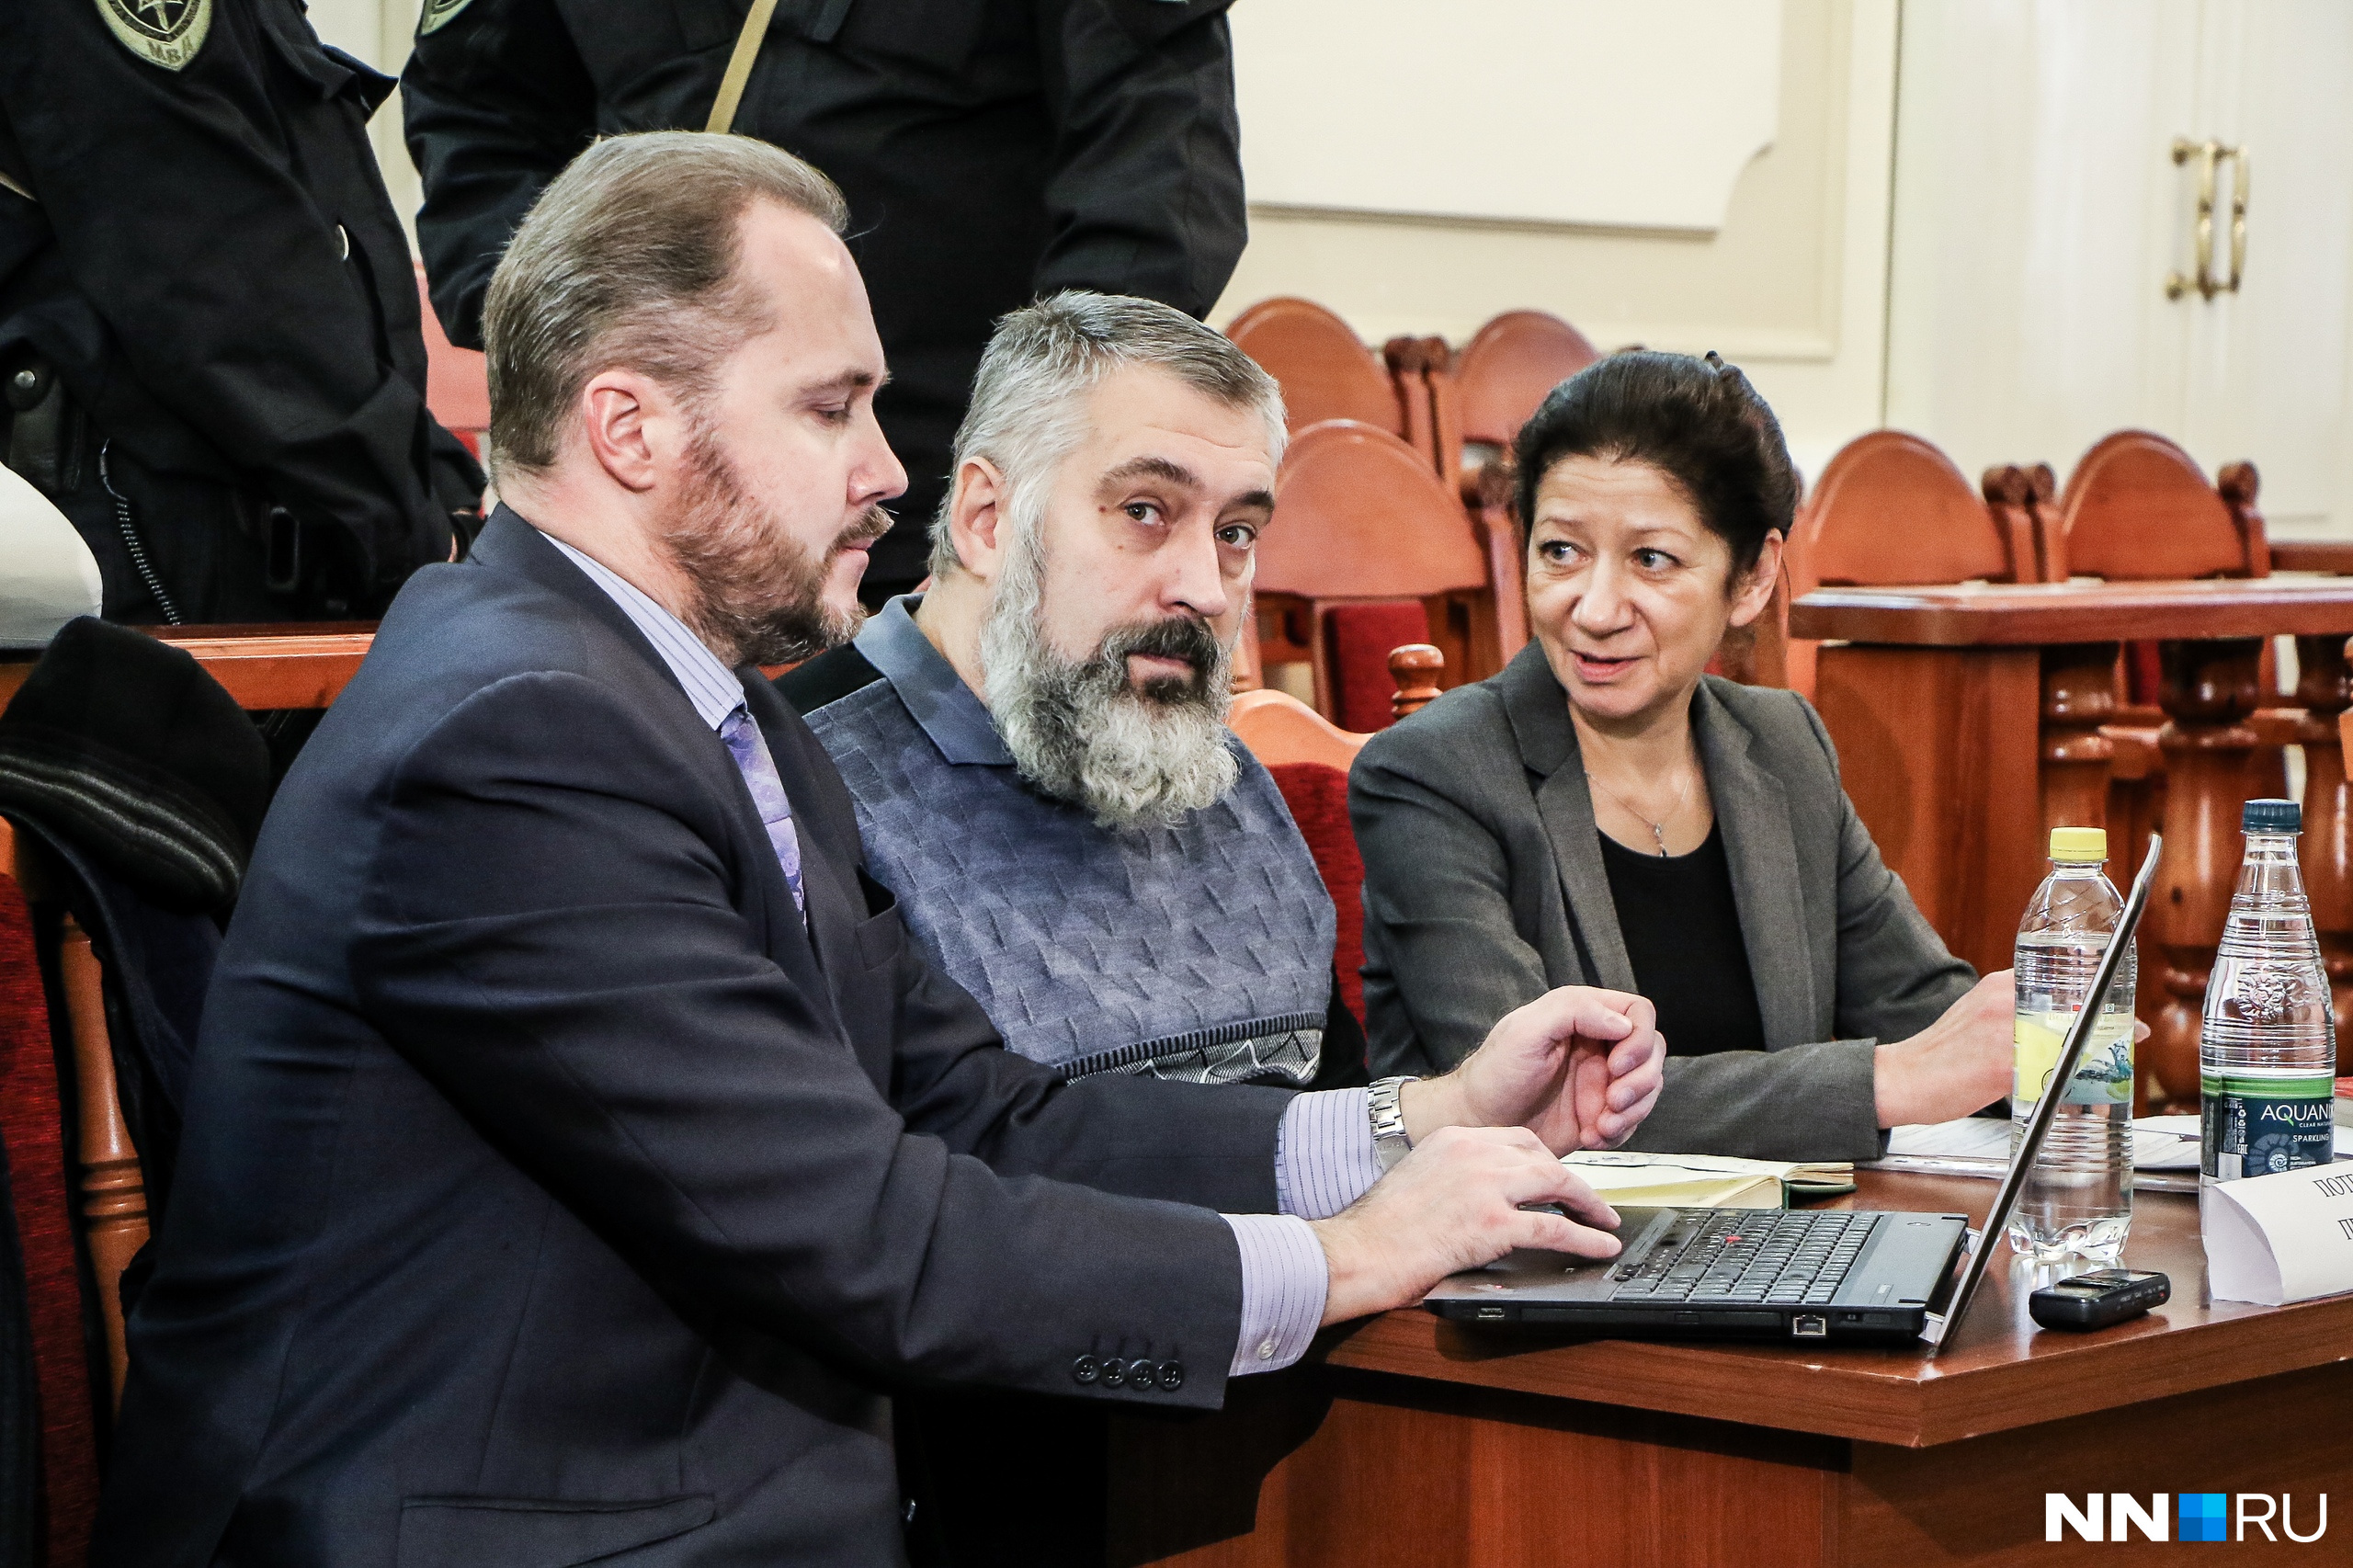 Пострадавшего Александра Новоселова на суде сопровождали два адвоката